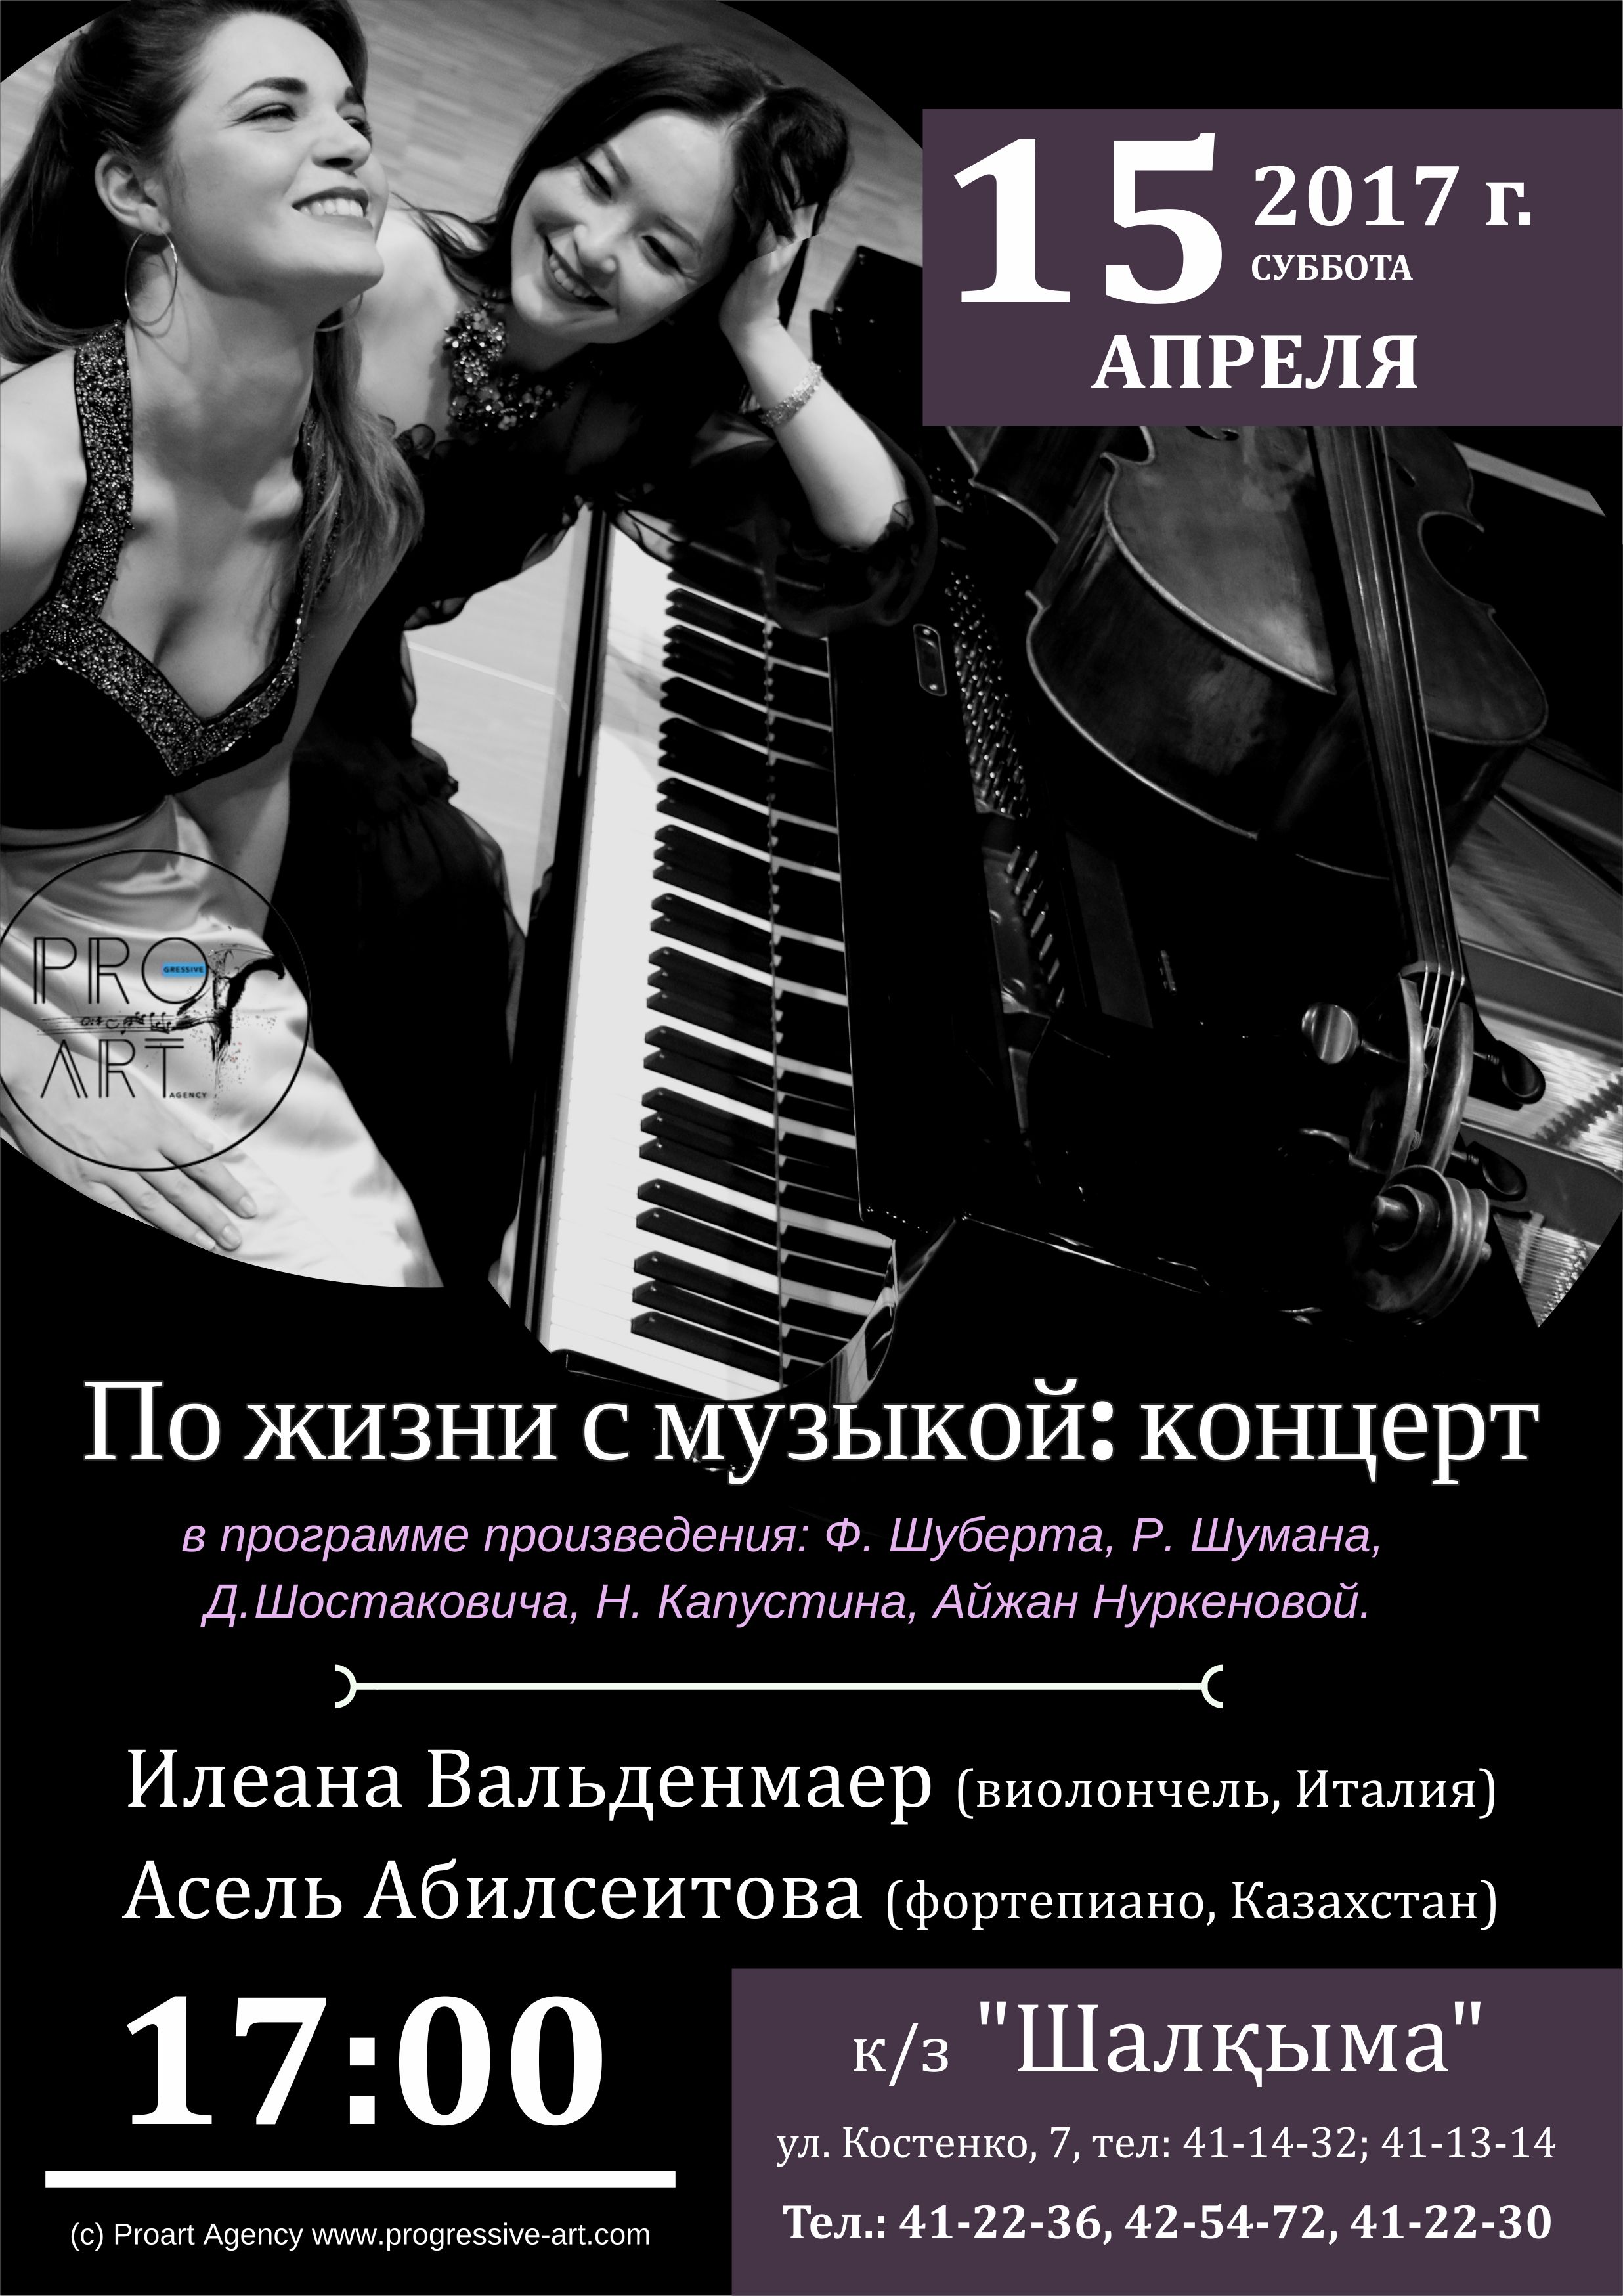 Концерт "По жизни с музыкой" 15.04.17